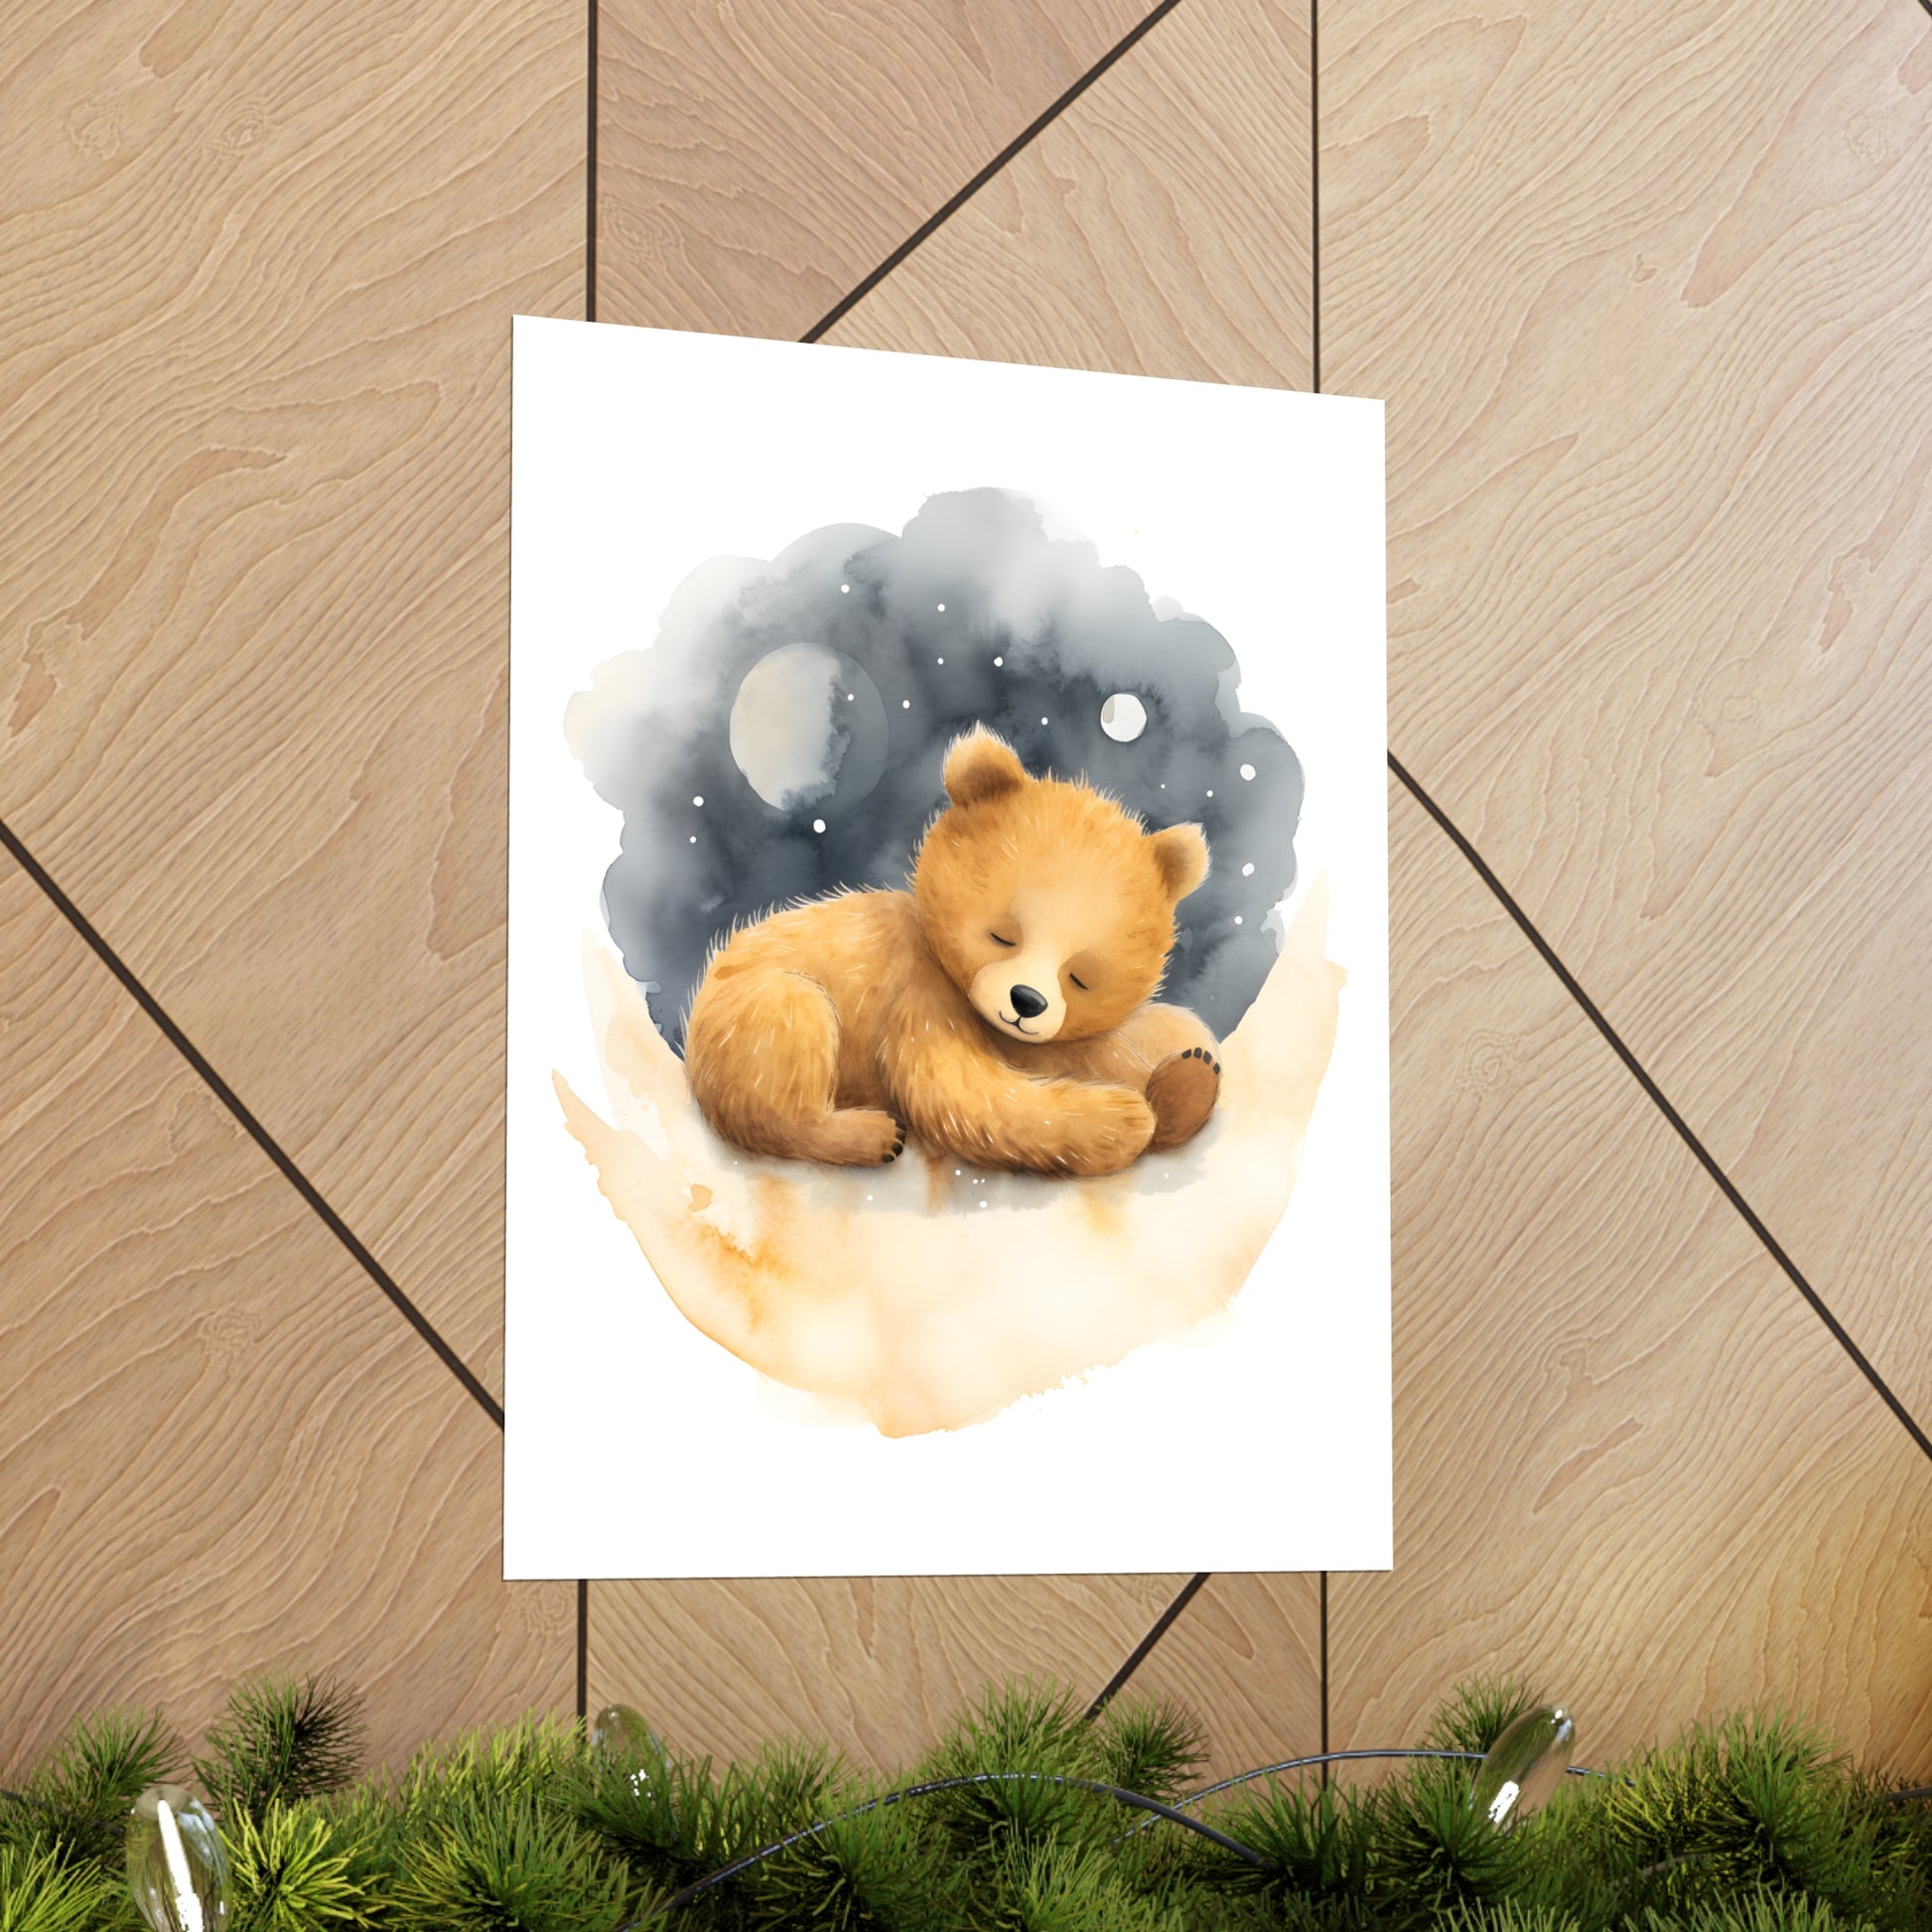 Teddy Bear Print, Bear Nursery Decor, Baby Boy Print, Nursery Wall Art, Moon and Stars, Lovable Teddy, Nursery Decor, Nursery Wall Art. - CosmicDeva